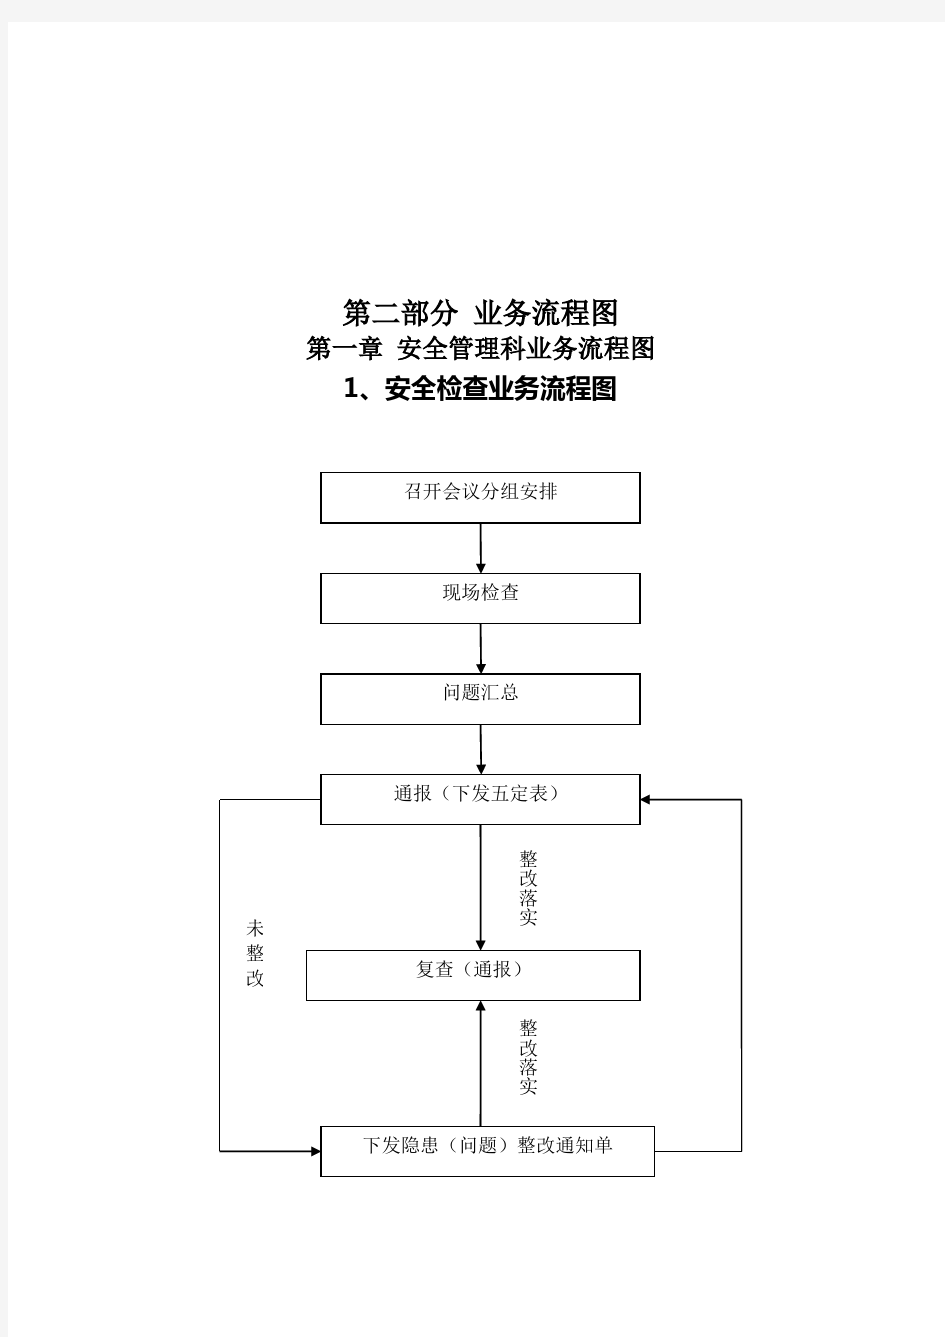 【流程管理】业务流程图范本(doc 104页)